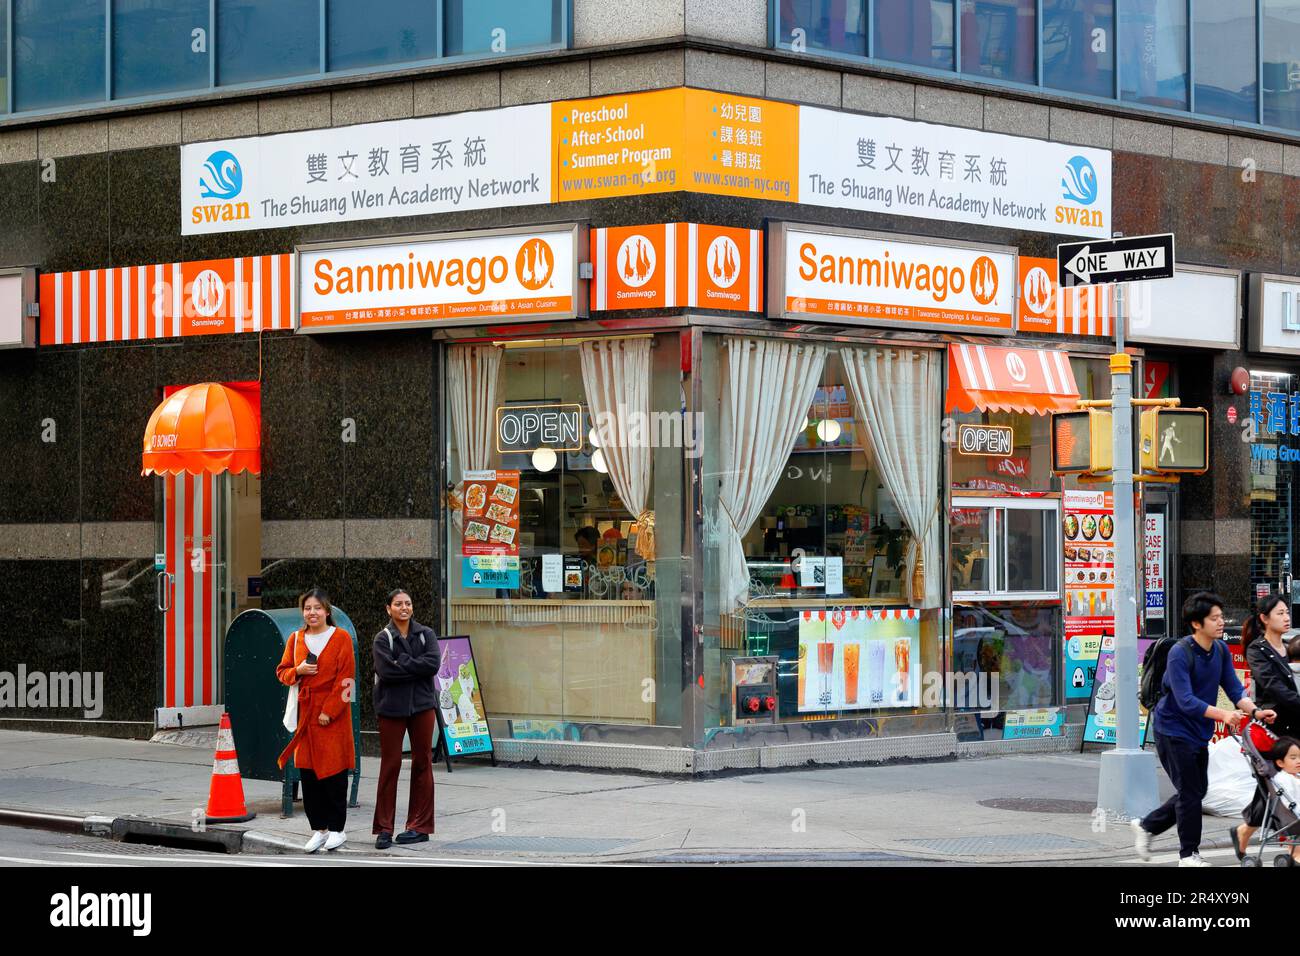 Sanmiwago, 90 Bowery, New York, New York, NYC, Foto eines taiwanesischen chinesischen Knödel-Shops in Manhattan Chinatown. Stockfoto